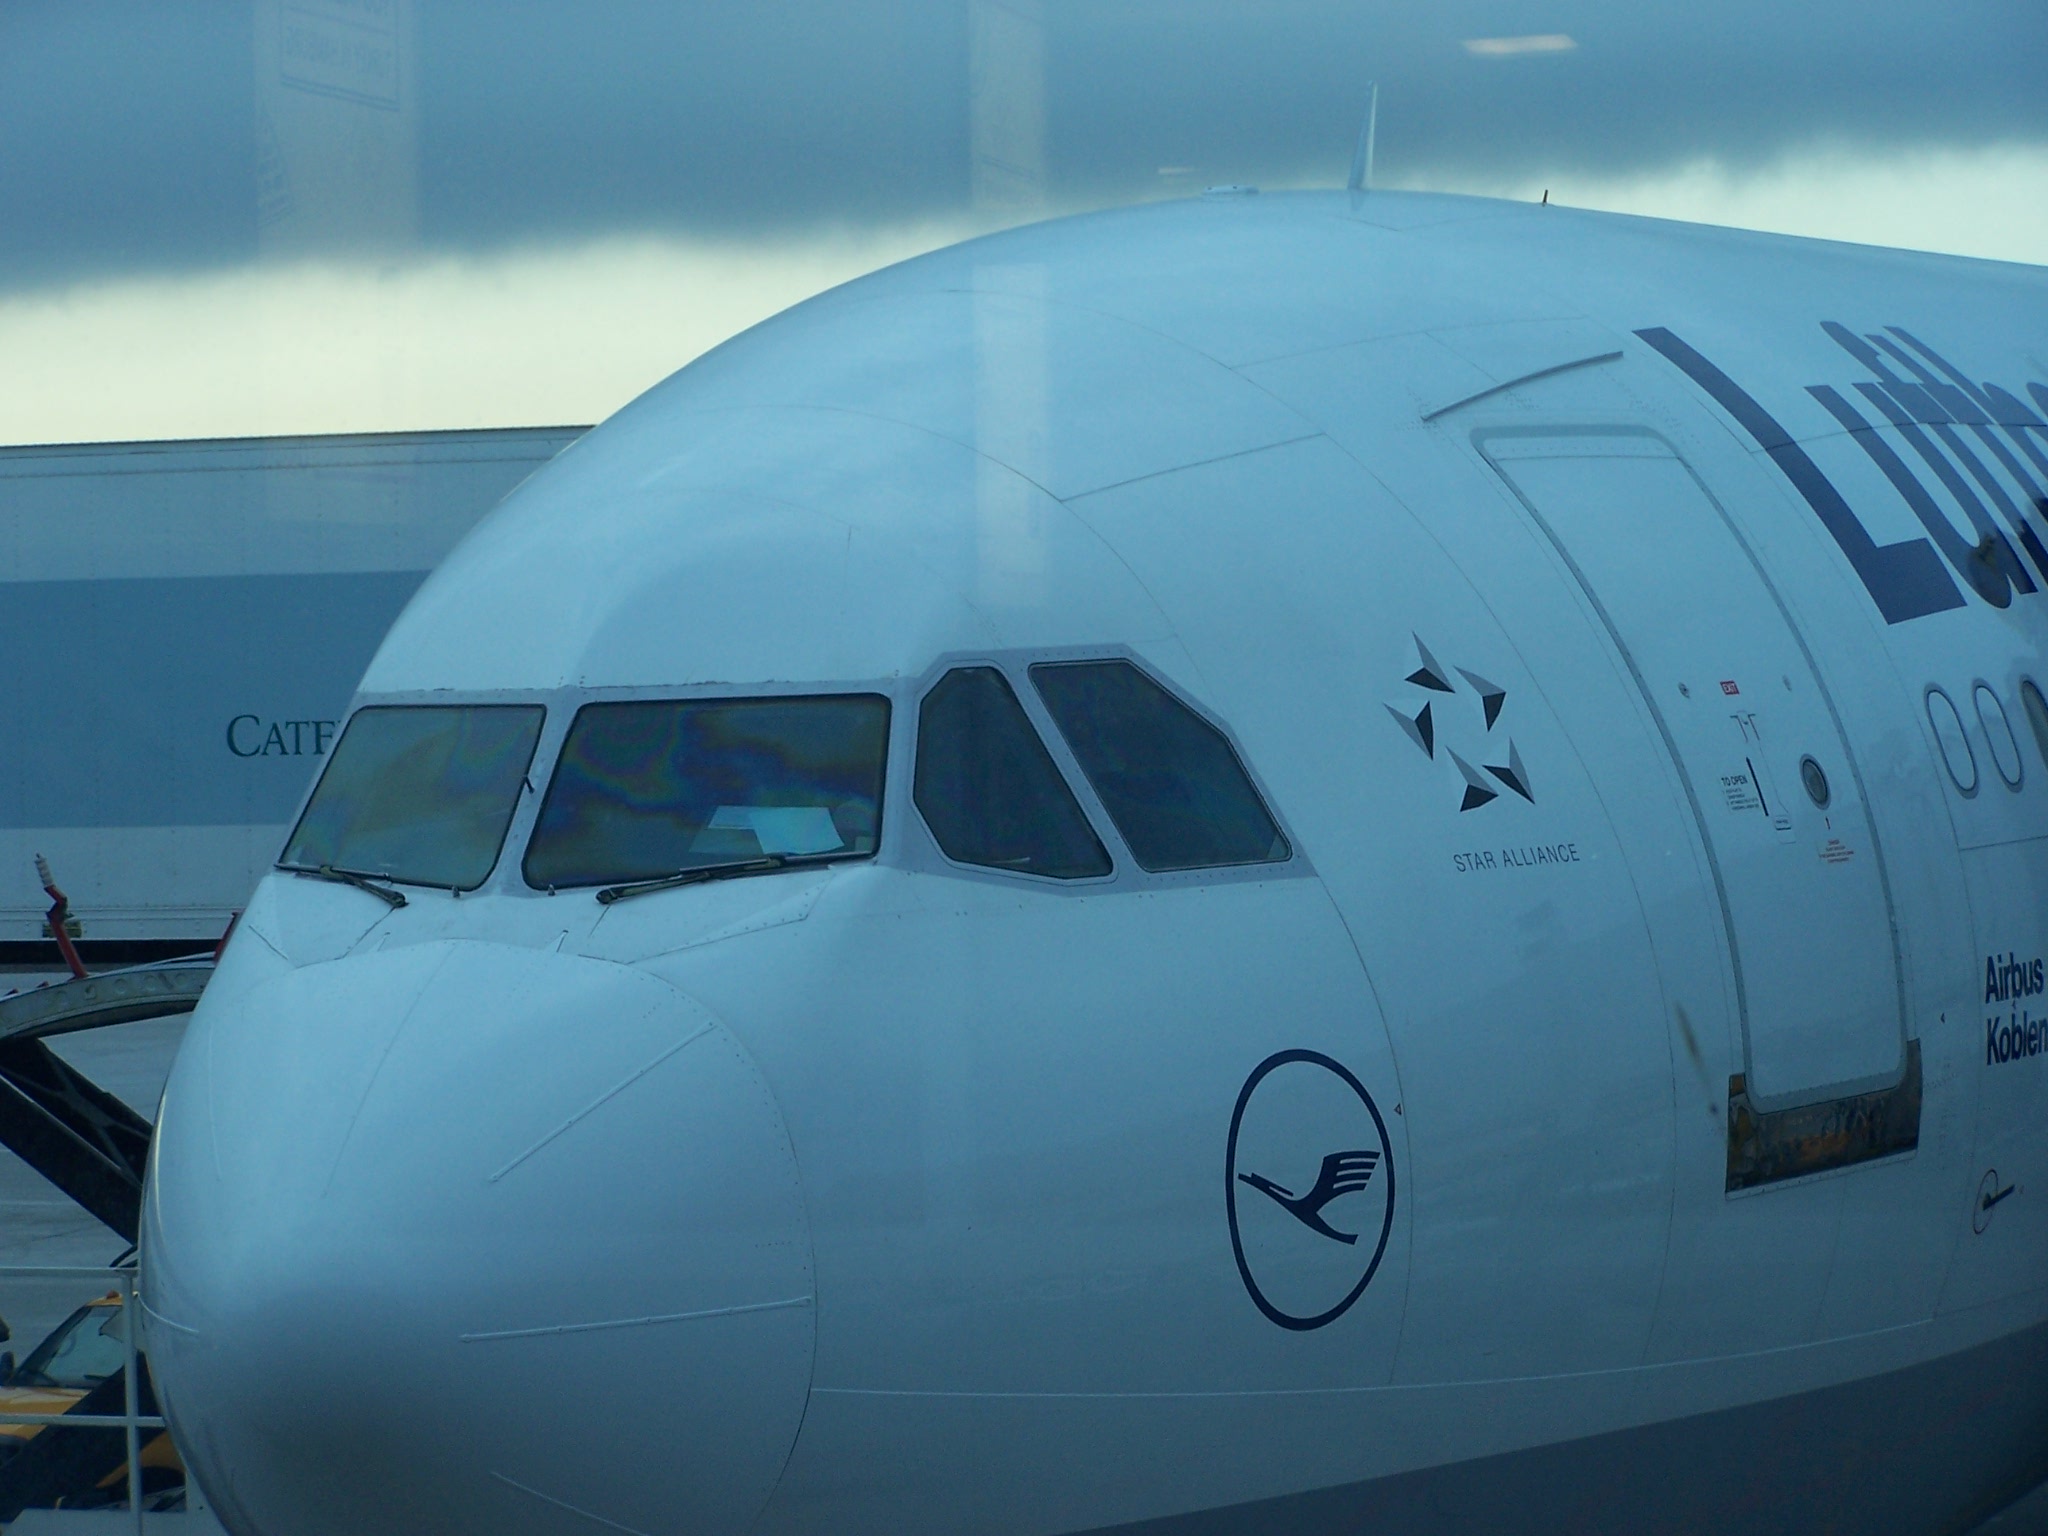 Acidente pode obrigar Lufthansa a rever estratégia de baixo custo